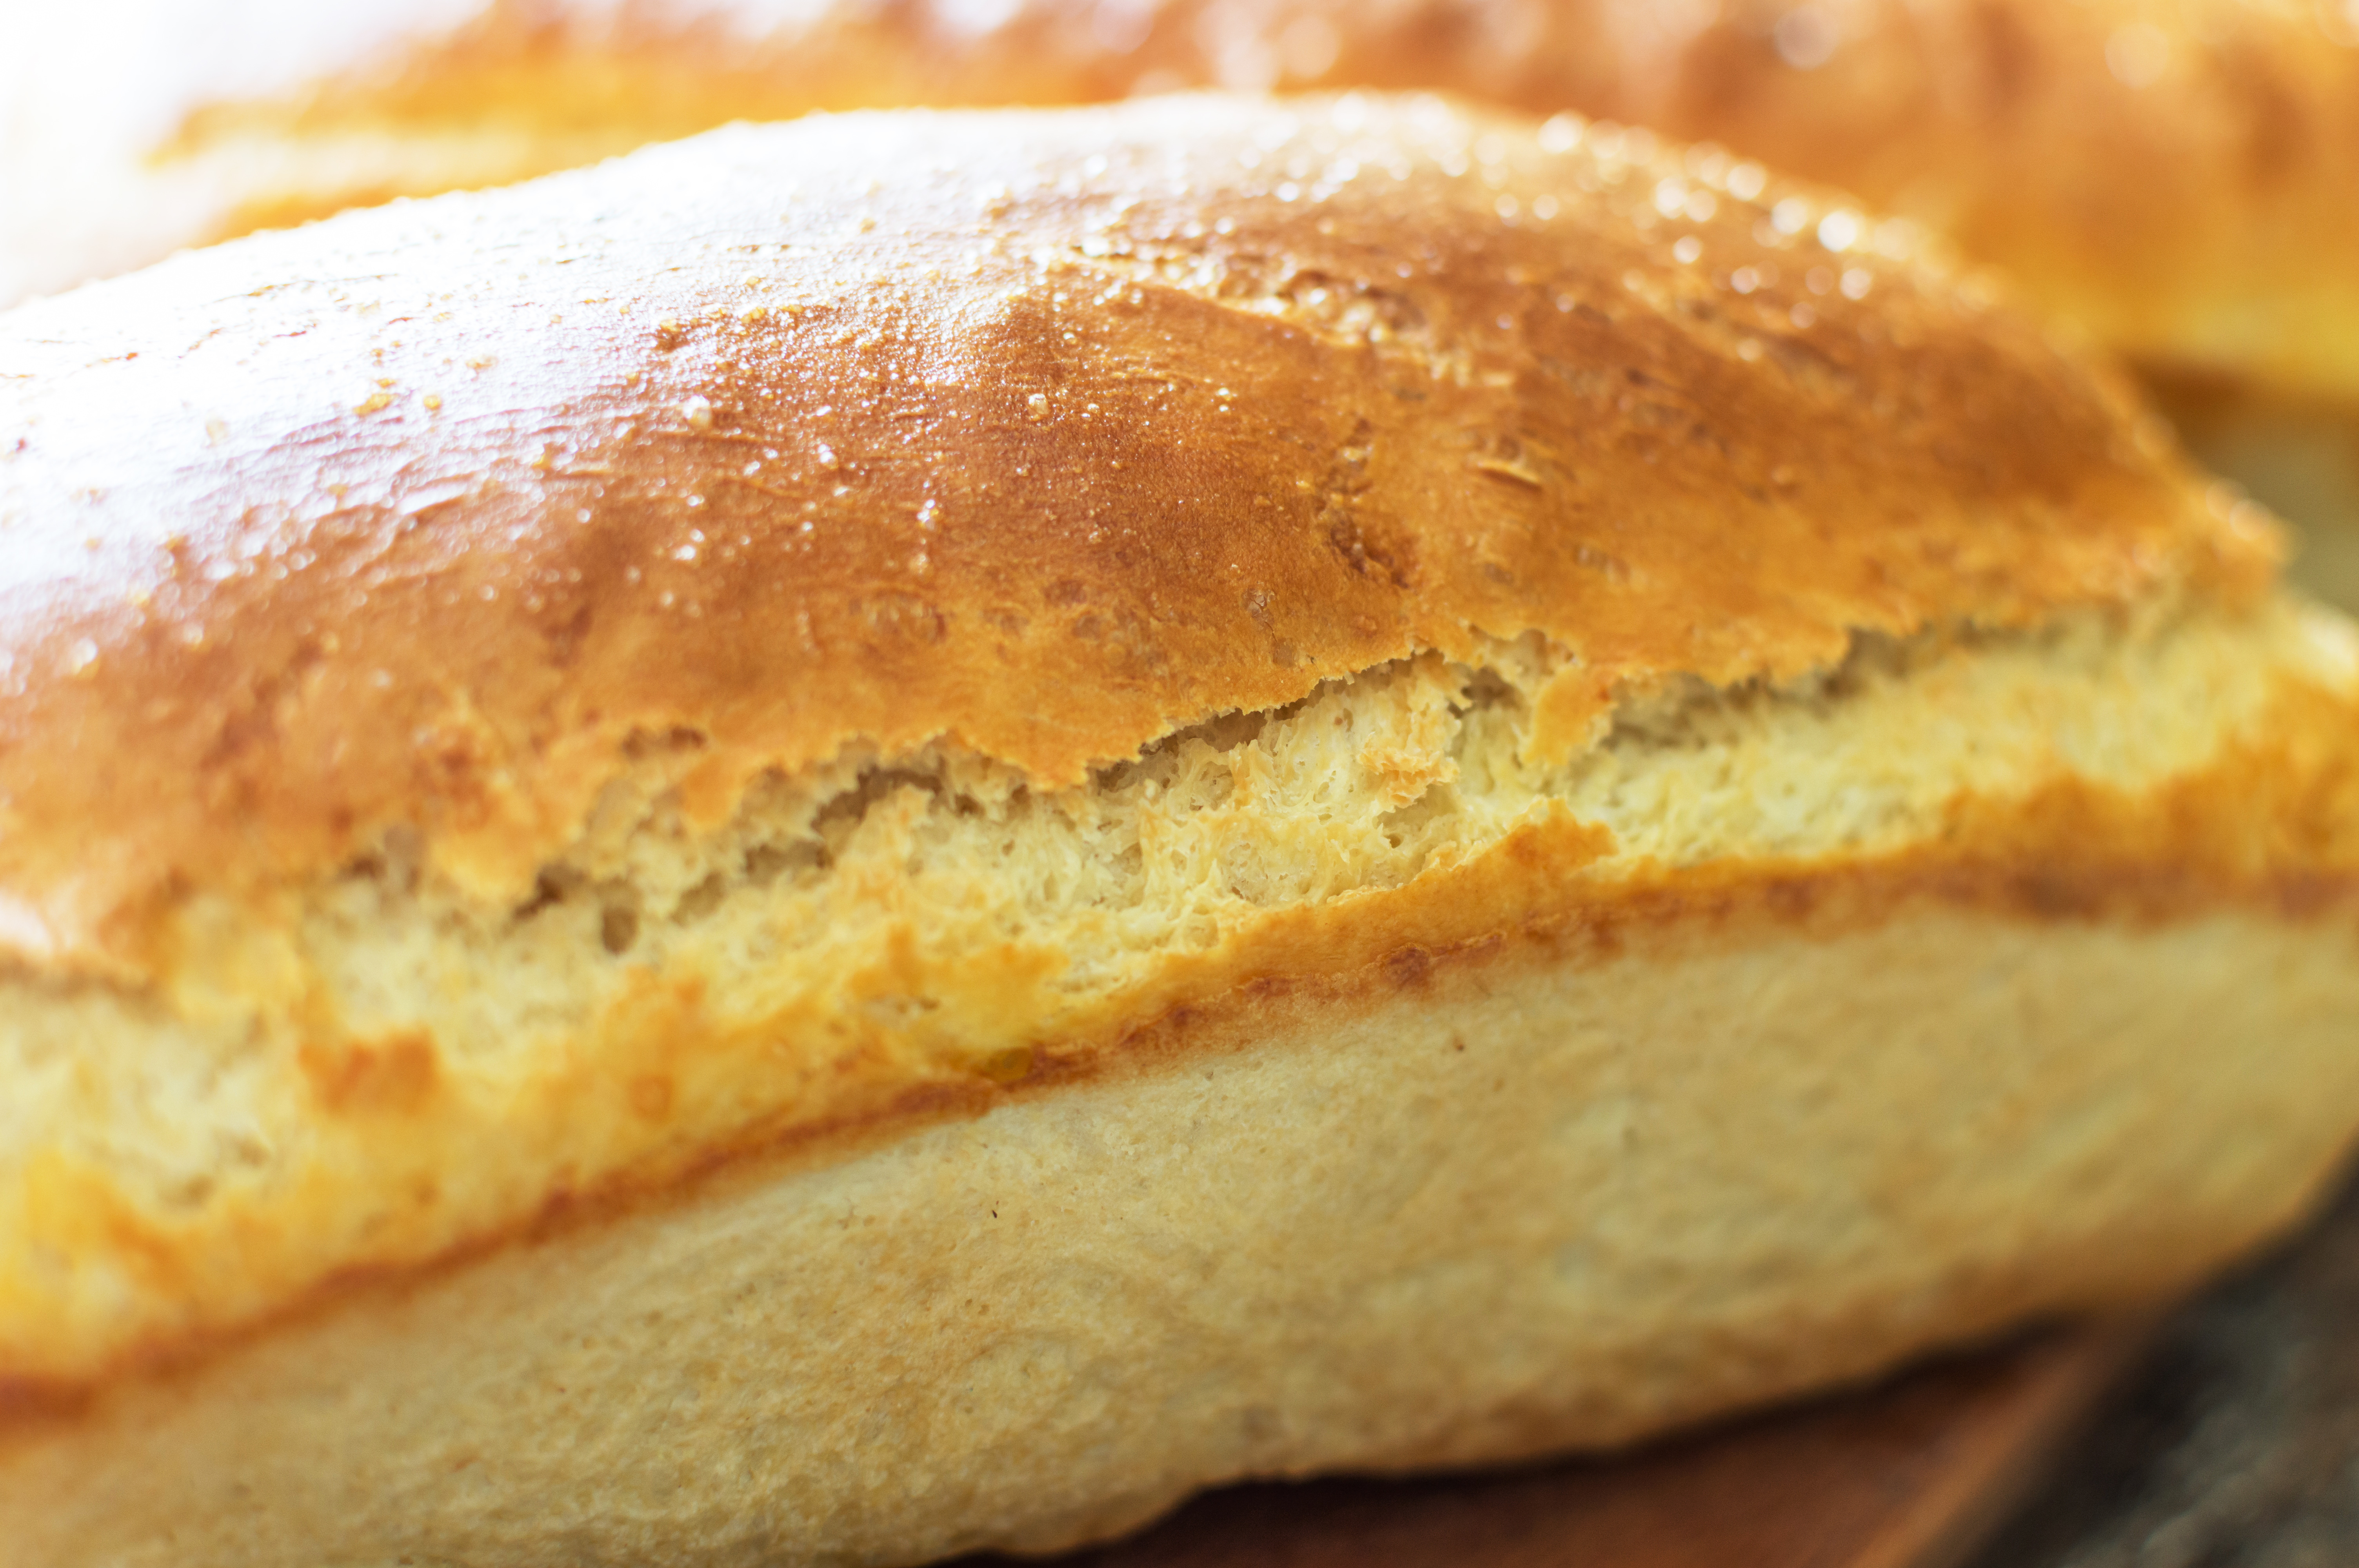 Някои реагират по-добре на белия хляб, а други - на пълнозърнестия